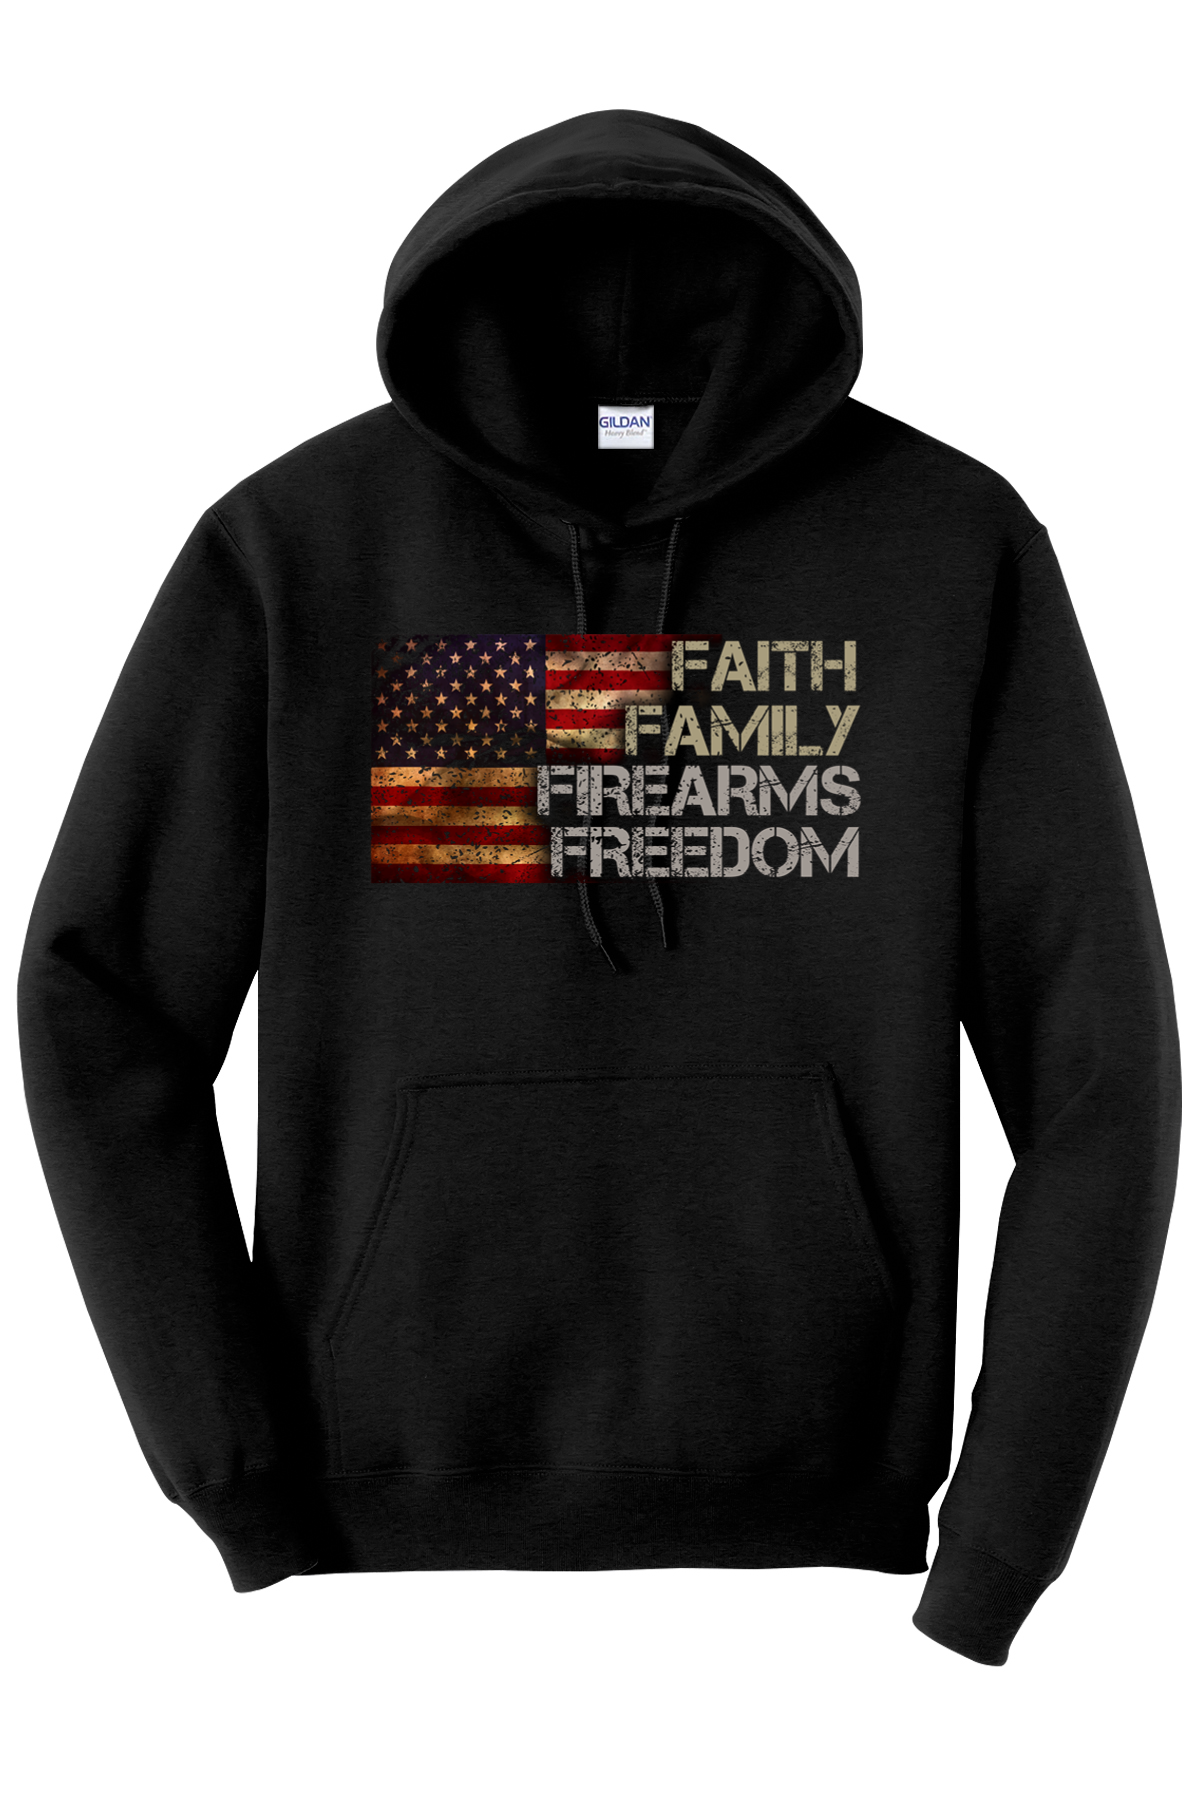 Faith. Family. Firearms. Freedom Hoodie